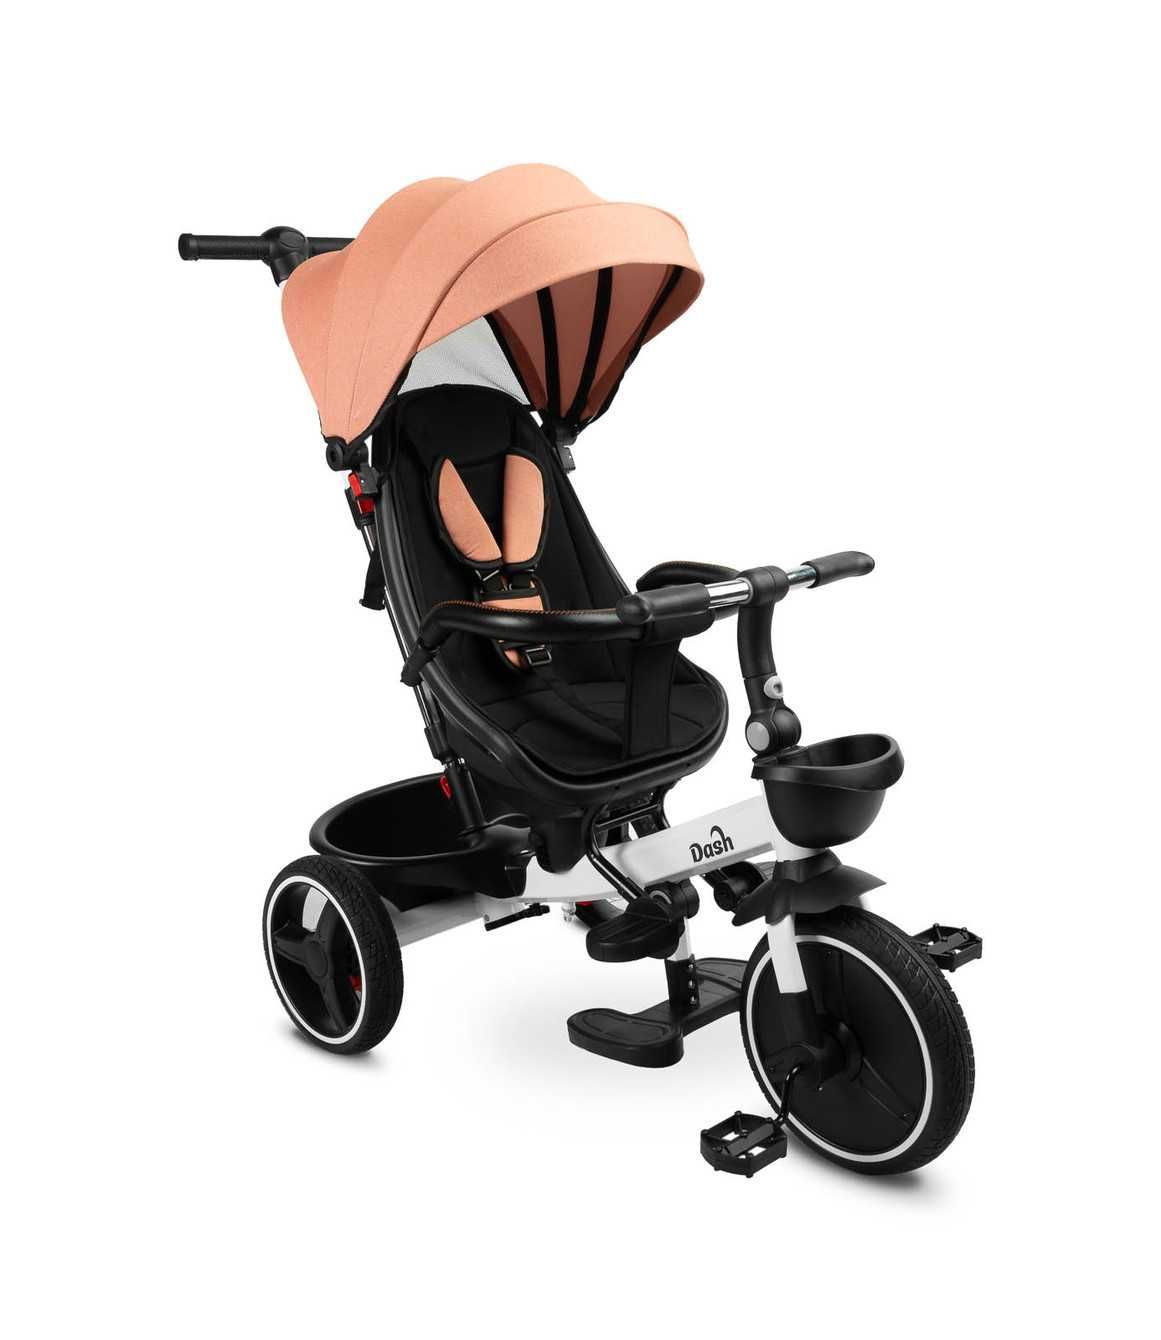 Rowerek dla dziecka 3 kołowy DASH Pink dziecięcy pojazd trójkołowy